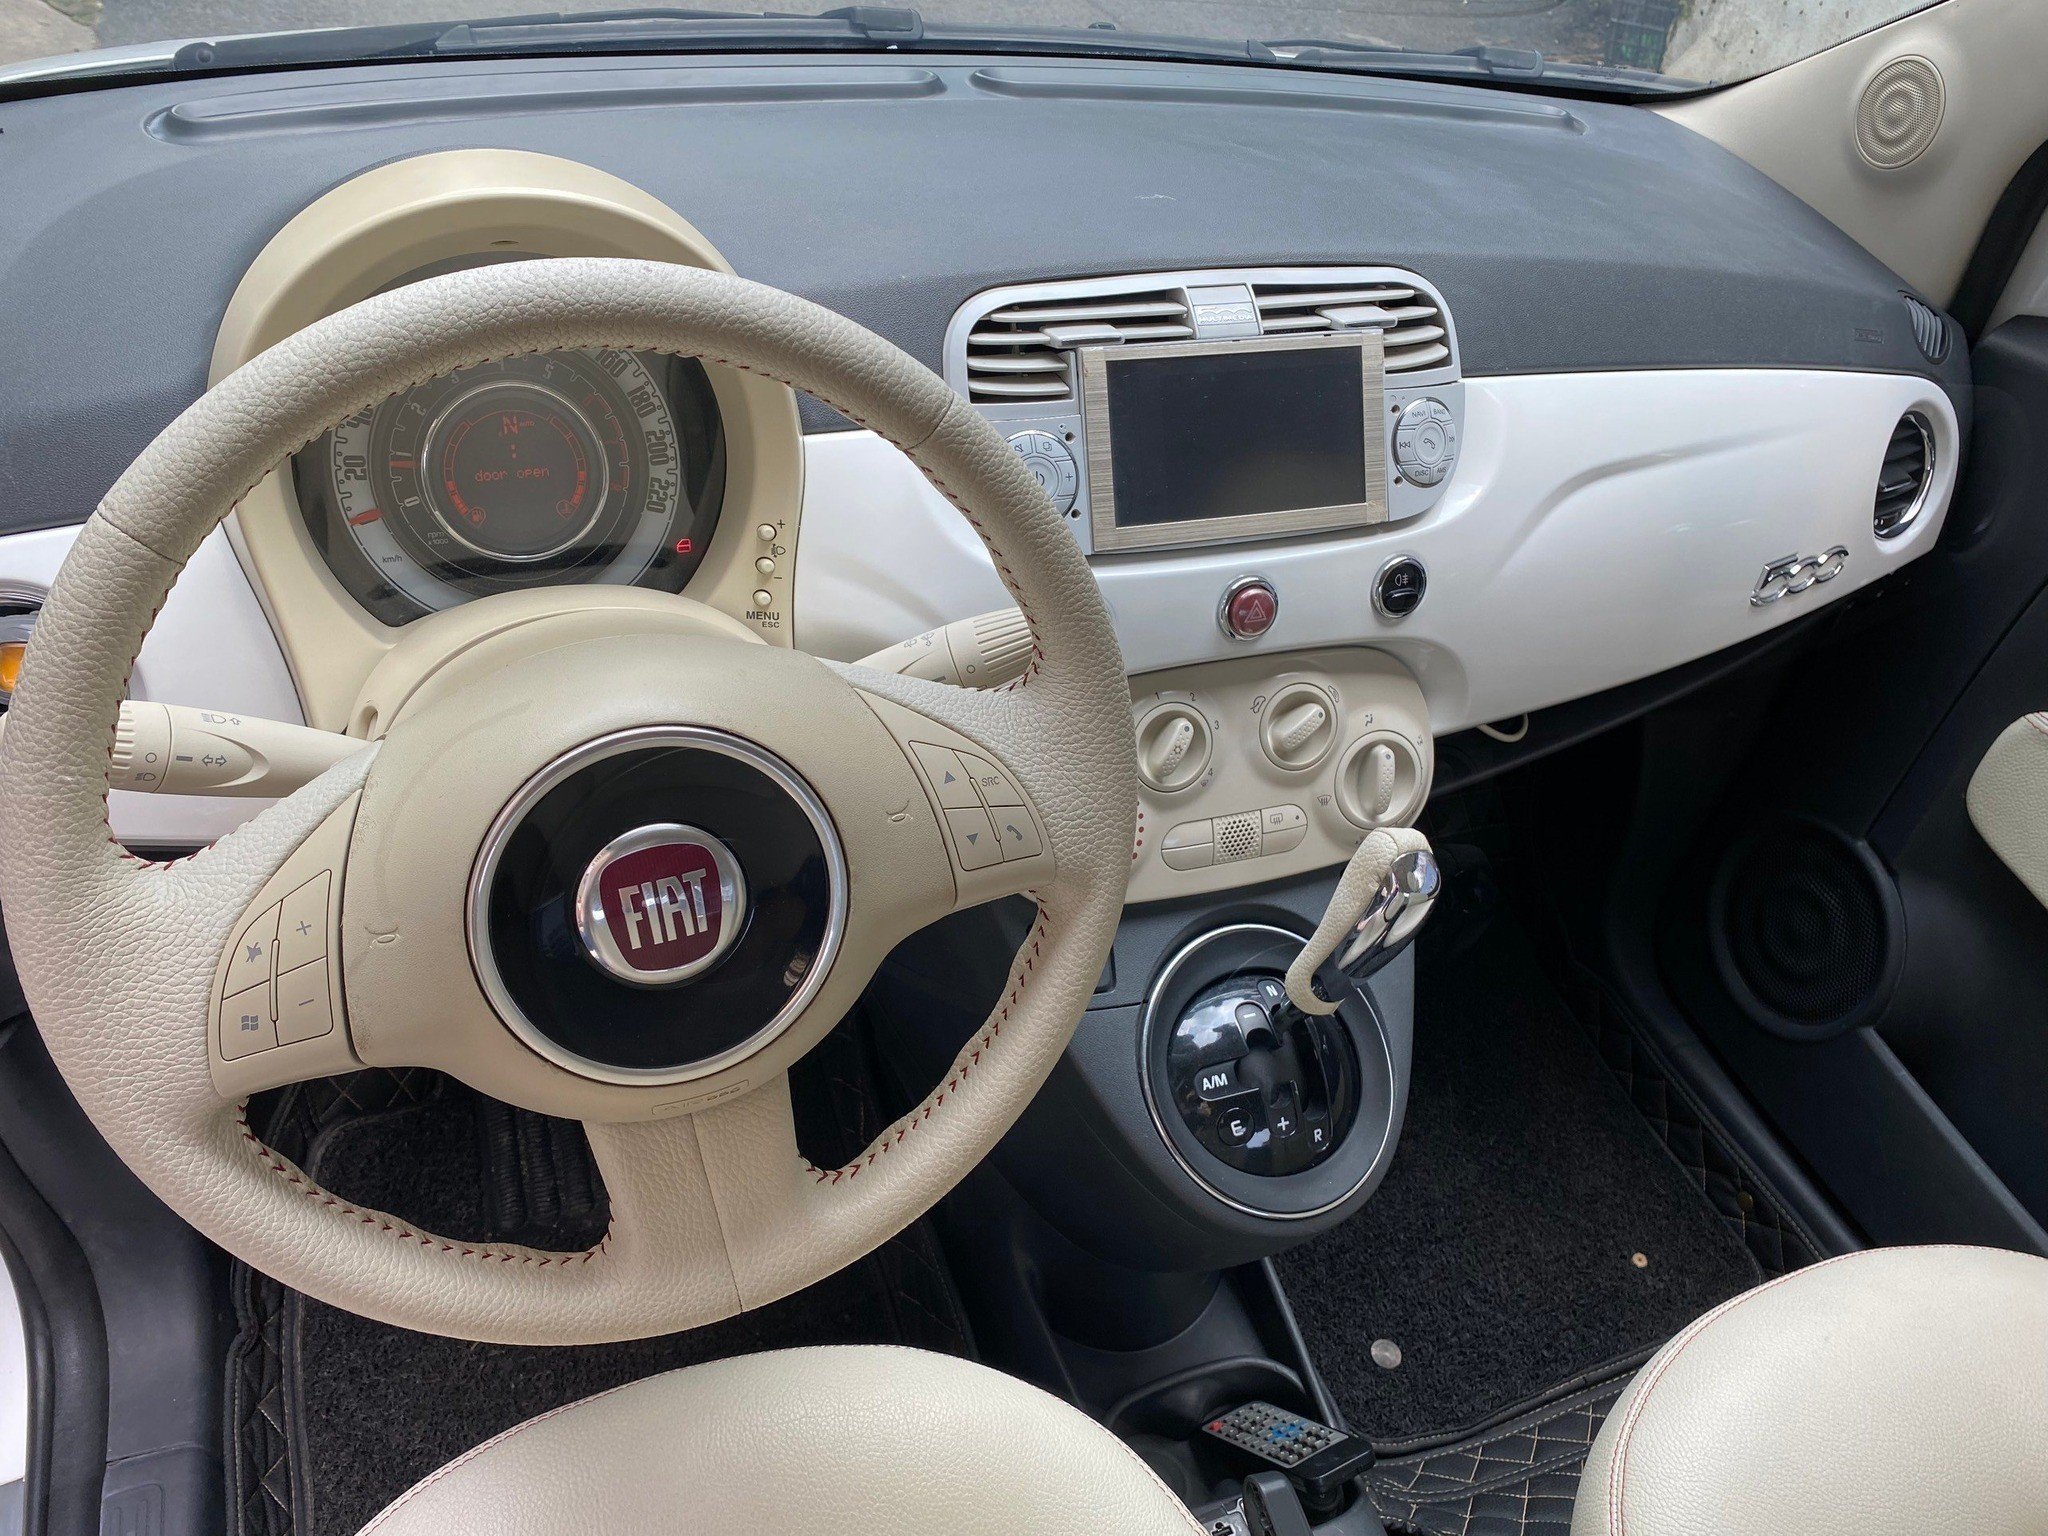 Bán xe Fiat 500 suản xuất 2010 số tự động màu trắng nhập italia